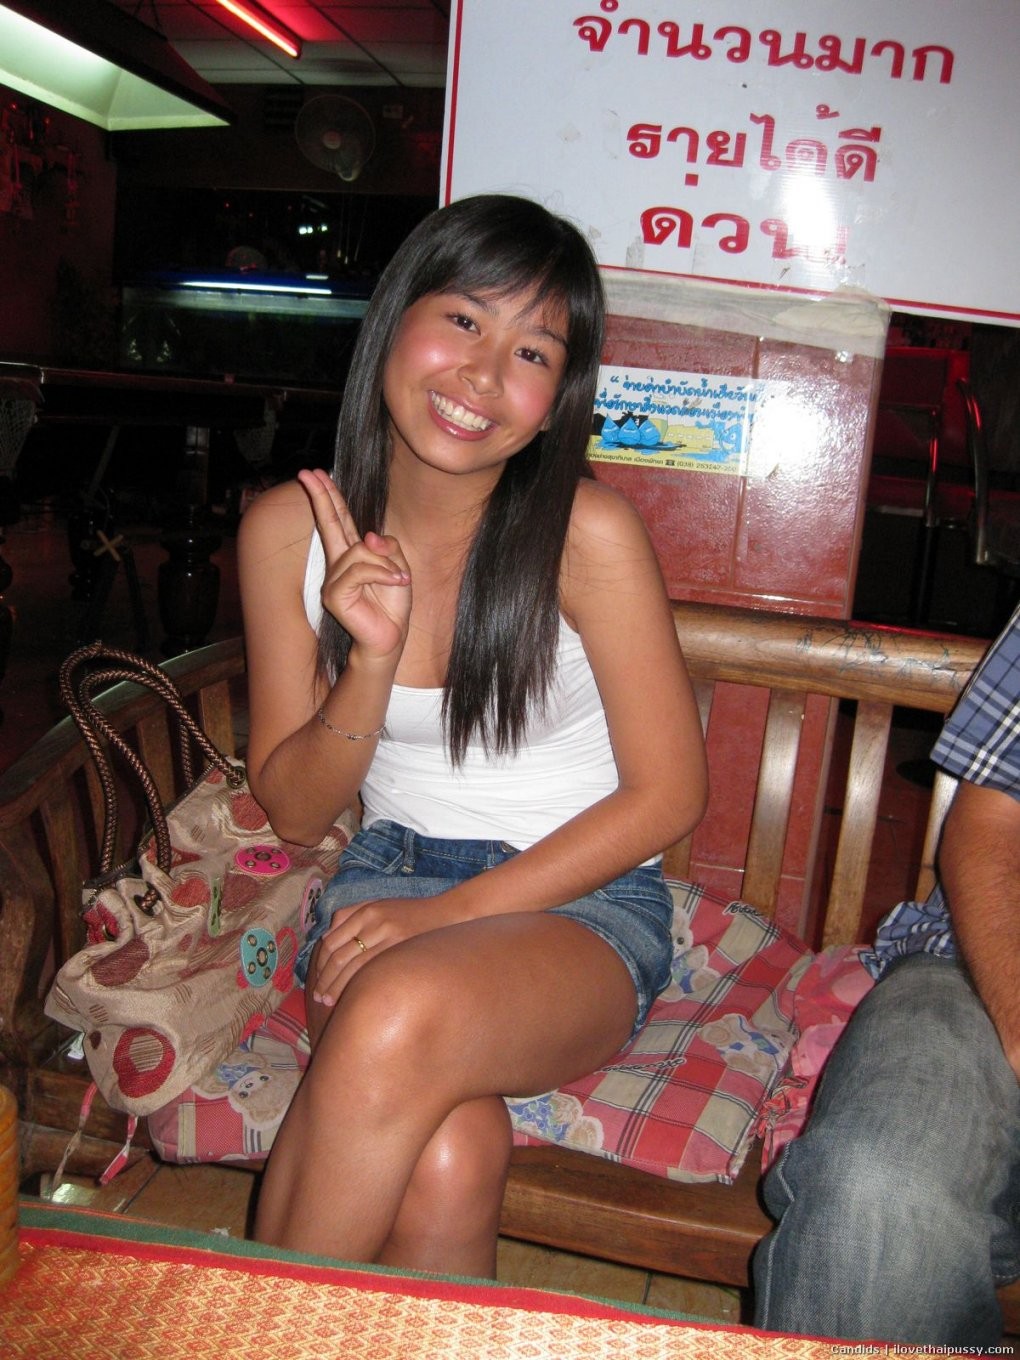 Filthy Thai Bargirl whore fucked bareback no condom crazy sex tourist loves risk #67975386